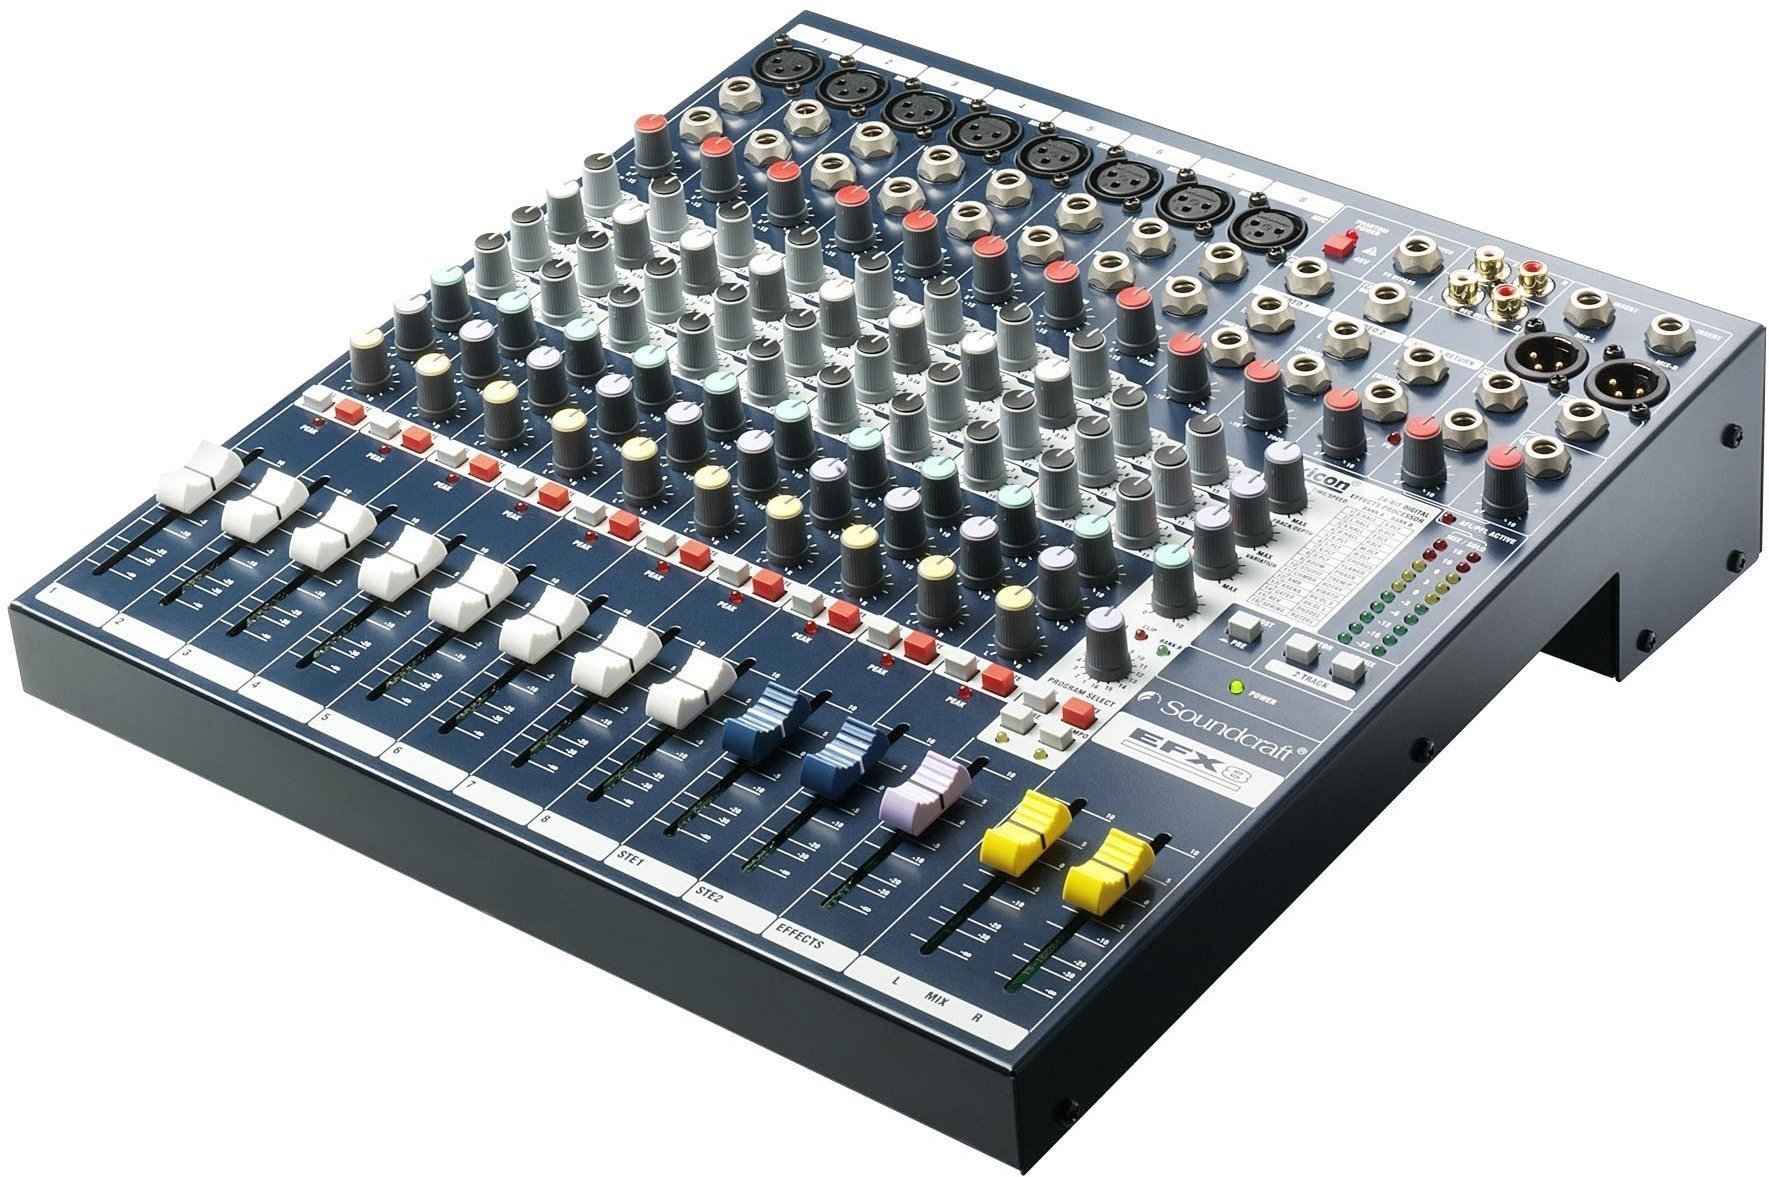 Table de mixage analogique Soundcraft EFX 8